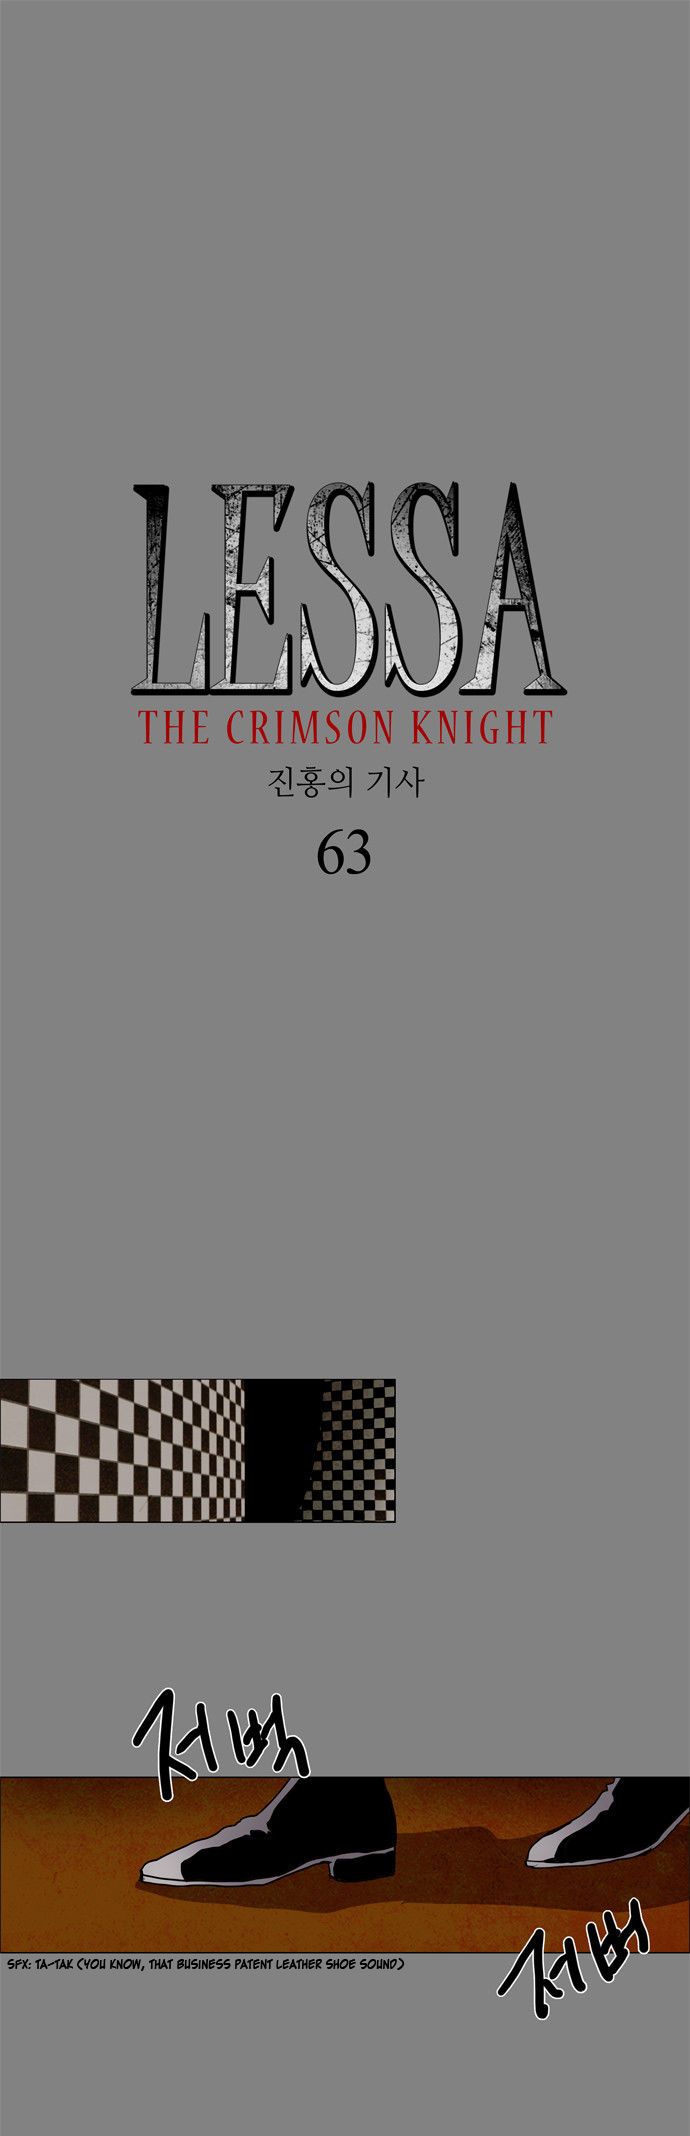 Lessa the Crimson Knight 63